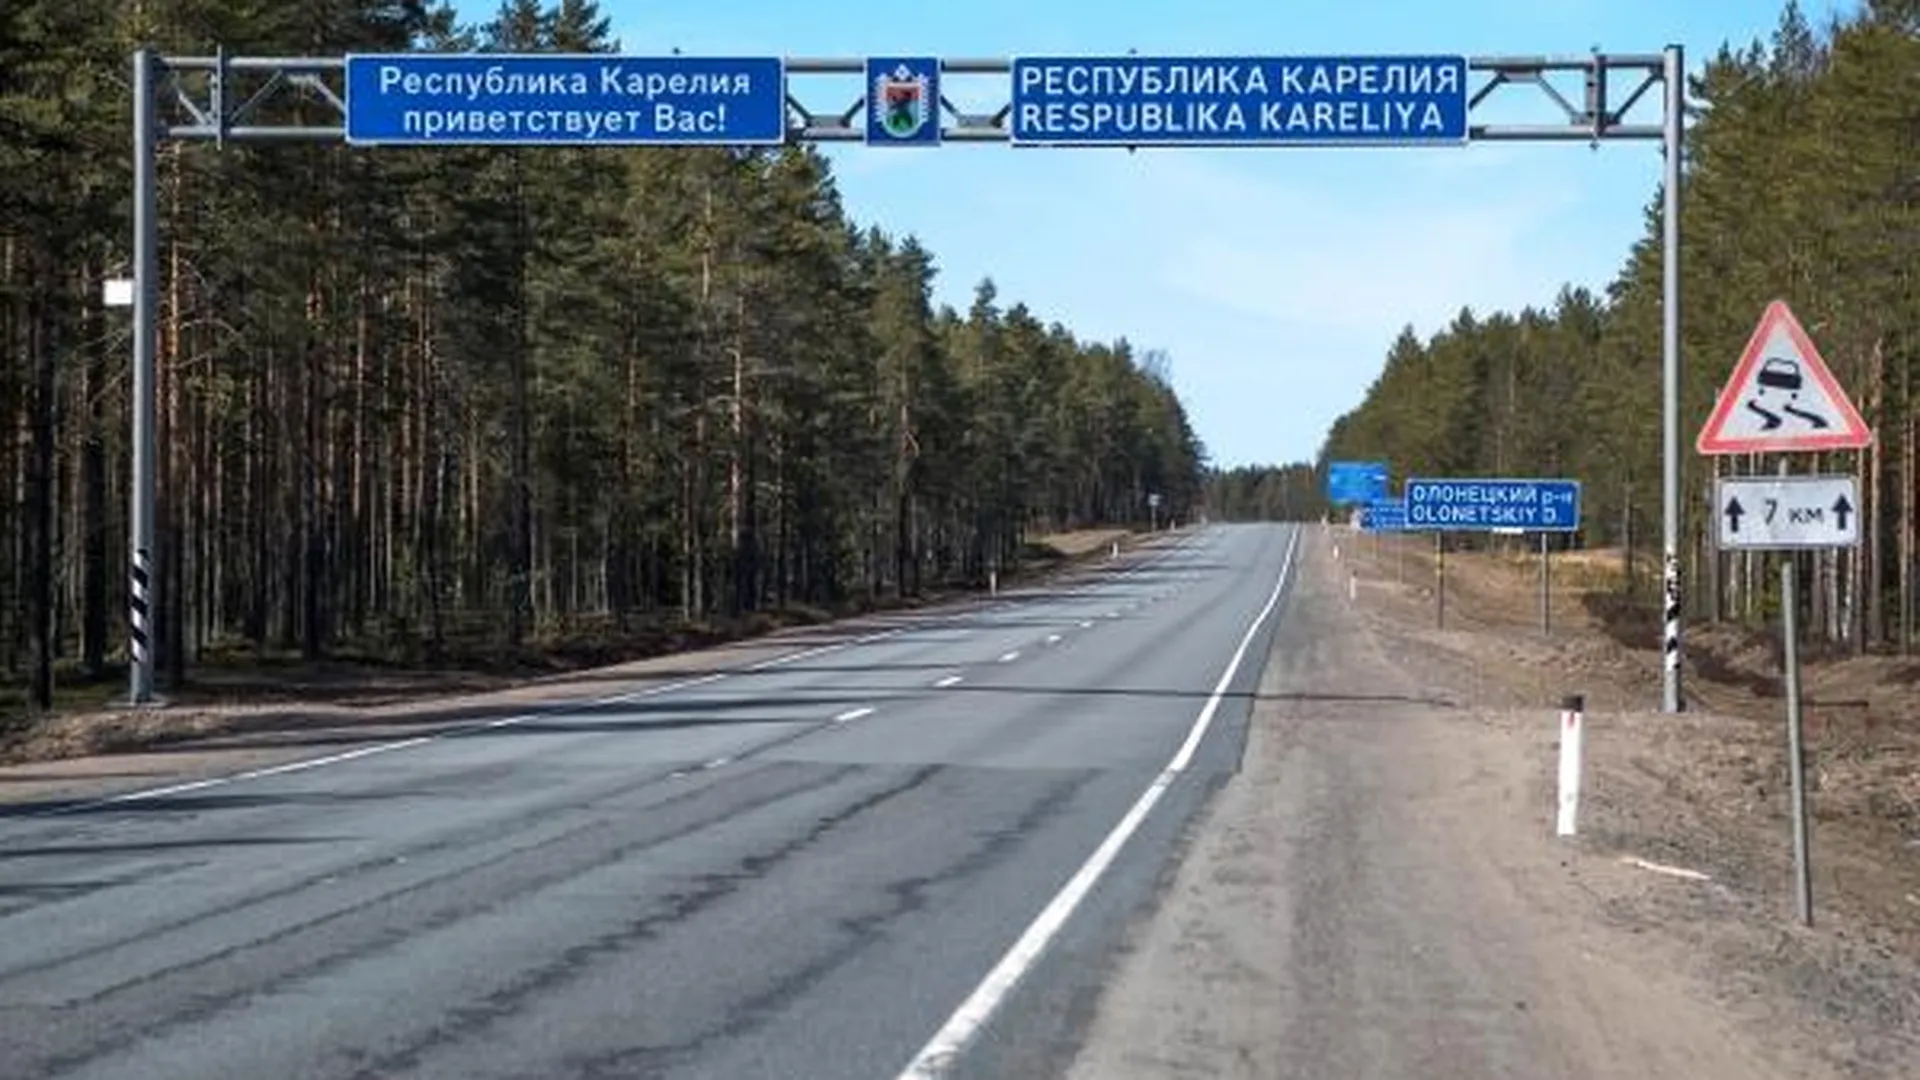 Дорожный знак «Скользкая дорога» на границе Ленинградской области и Республики Карелия